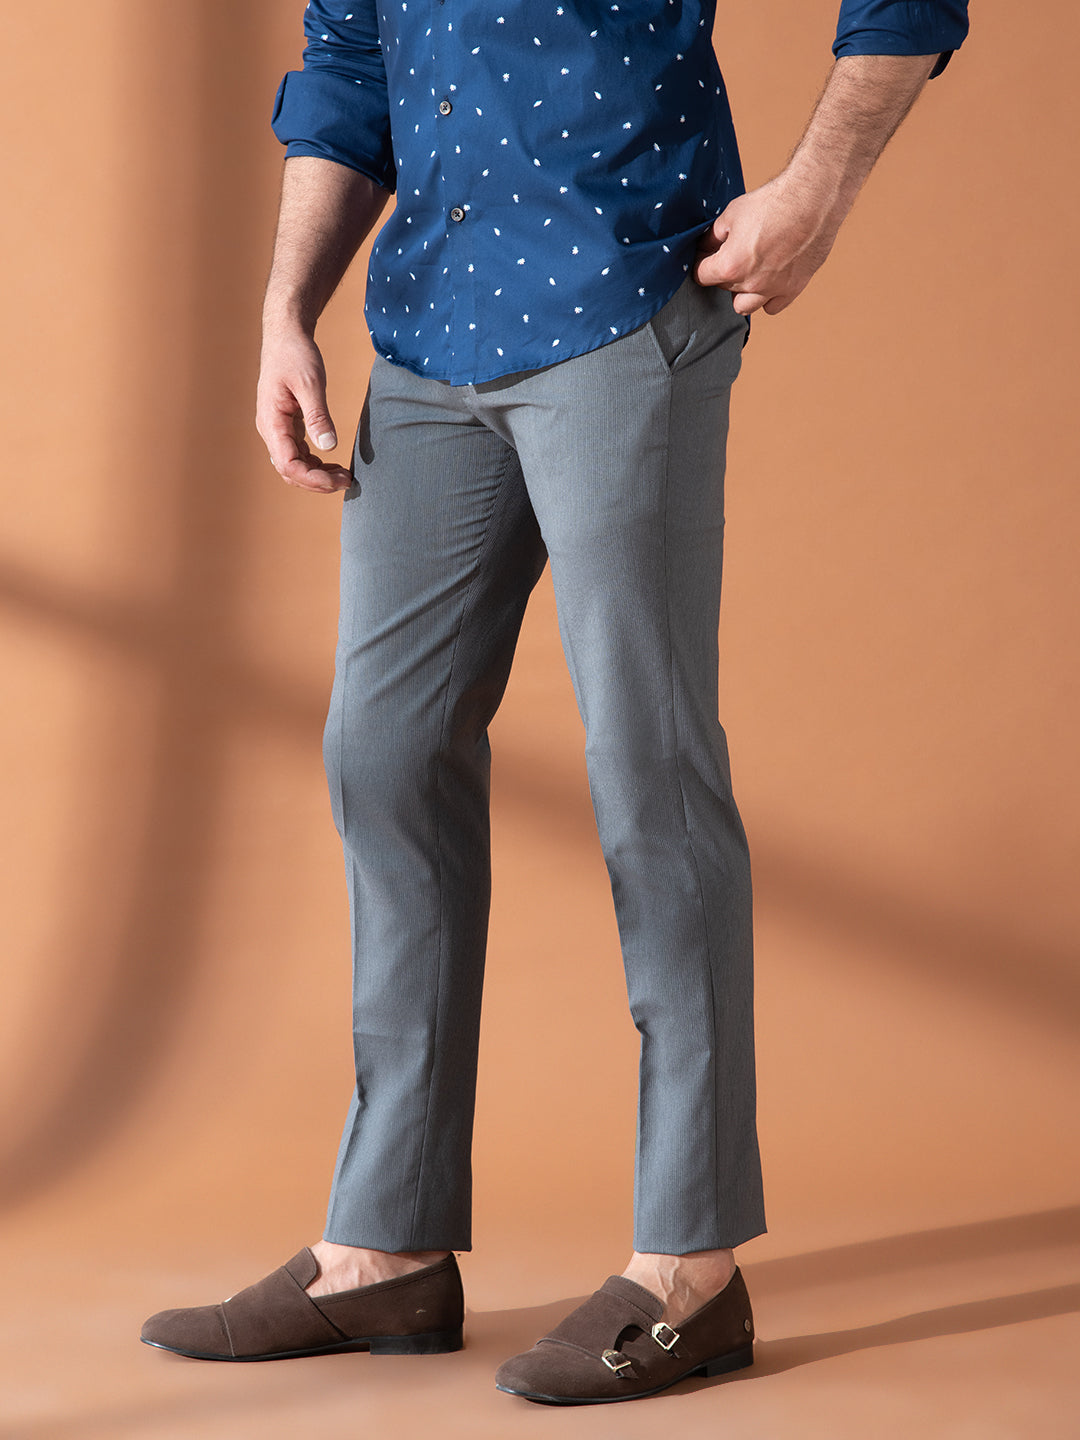 Trousers  Buy Trousers for Men Women  Kids Online in KSA  REDTAG